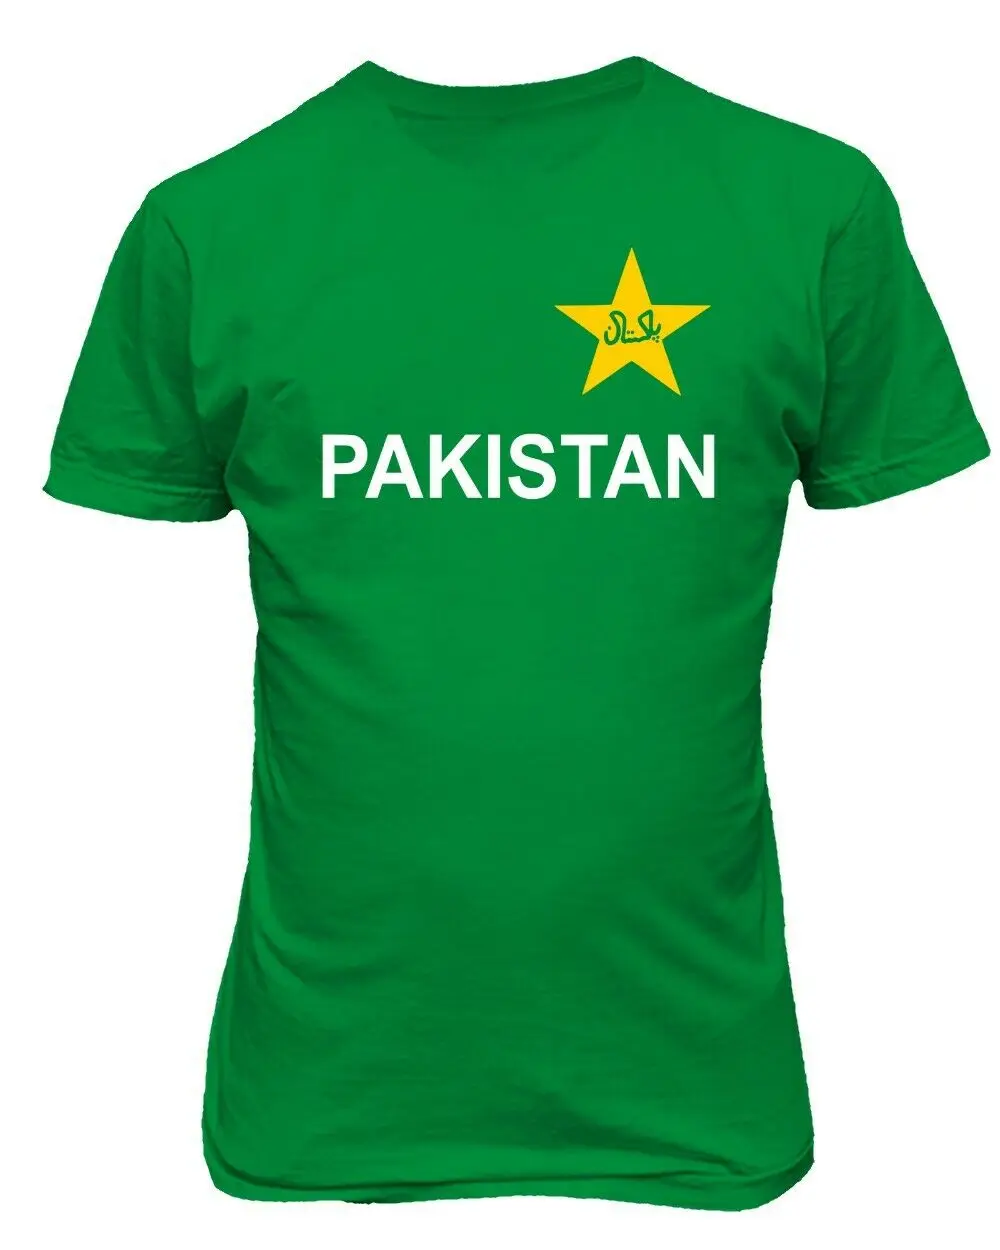 Мужская футболка в стиле фанатов крикета из джерси Пакистана - 0